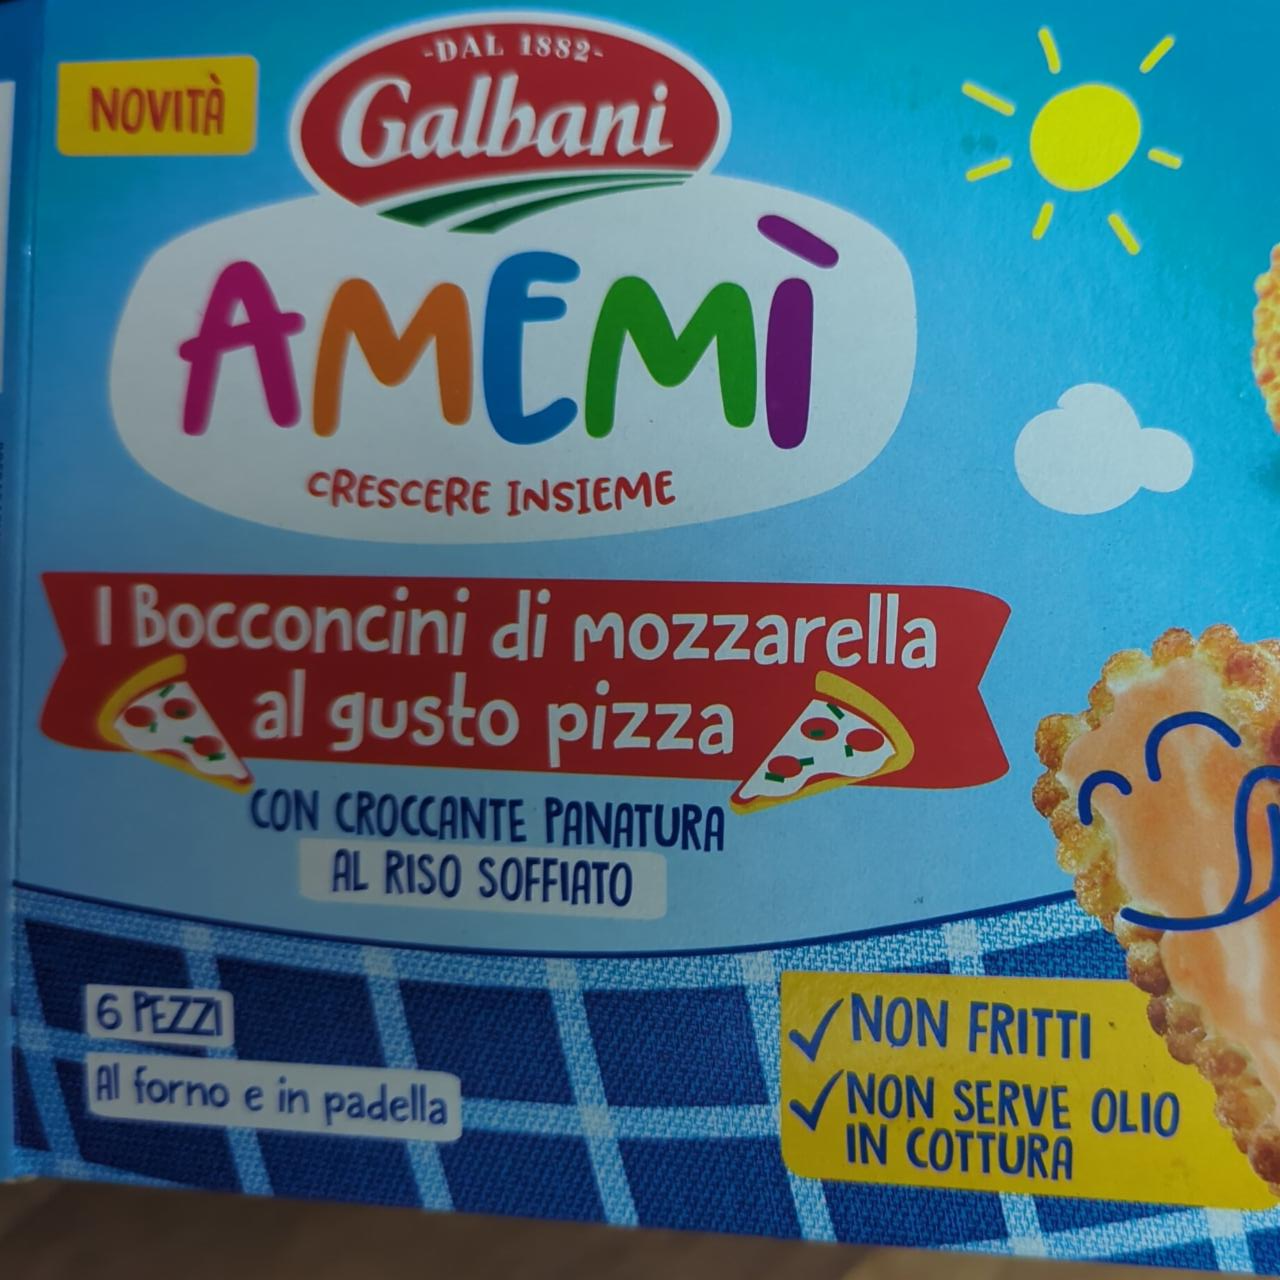 Fotografie - Amemì I Bocconcini di mozzarella al gusto pizza Galbani